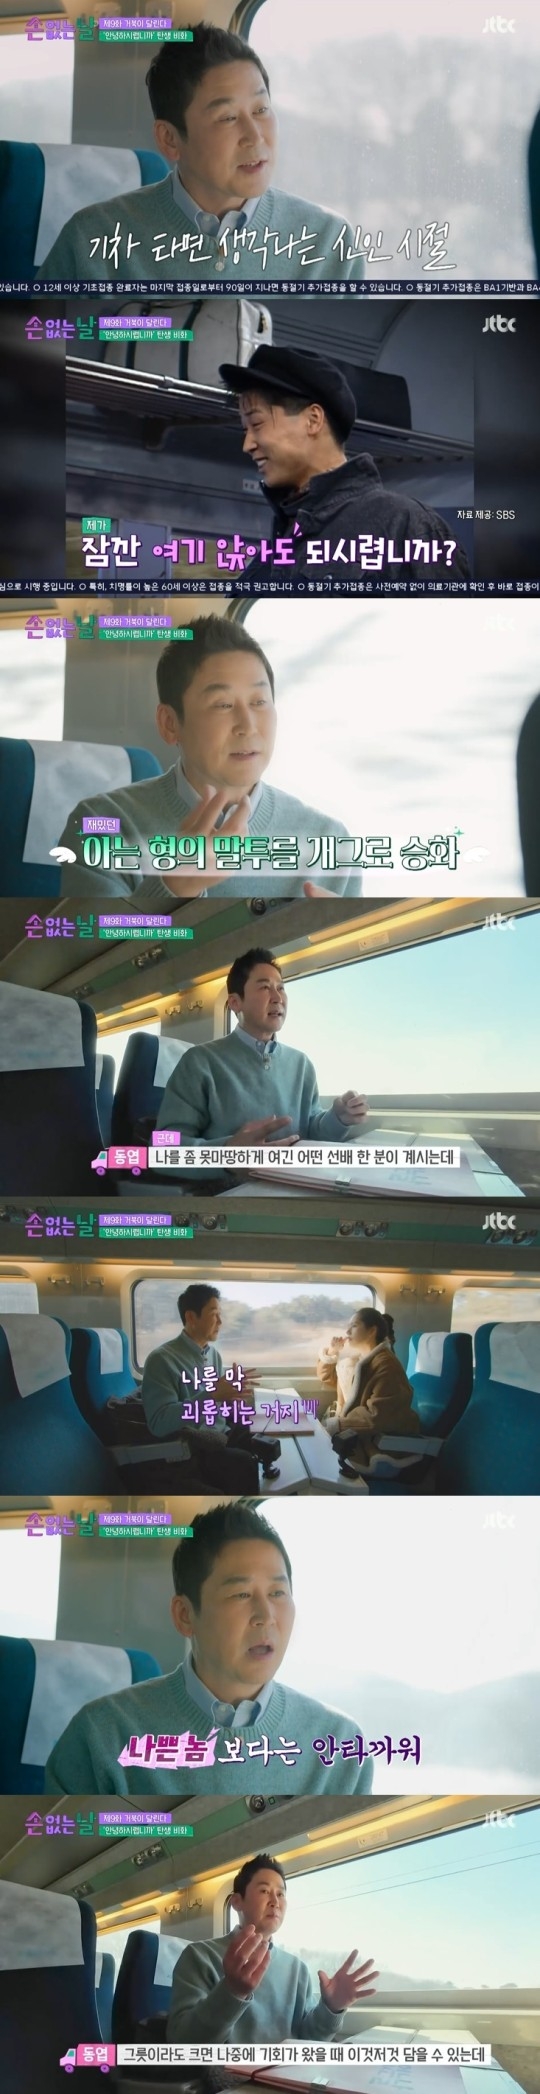 JTBC 예능 프로그램 ‘손 없는 날’ 캡처